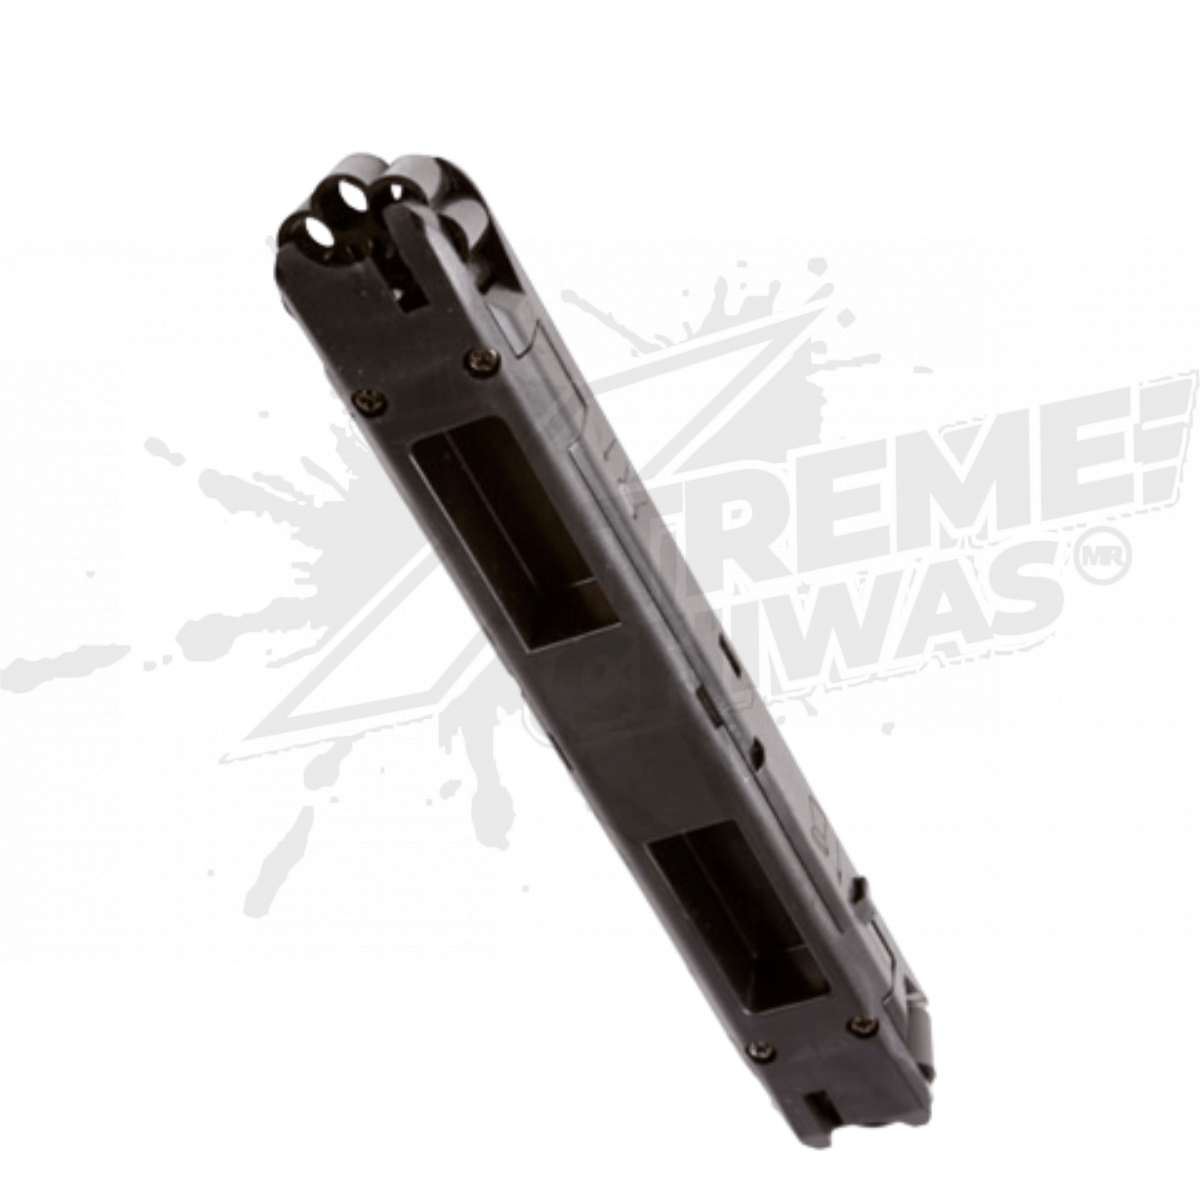 Paquete Pistola Gamo P-25 CO2 Pellets .177 (4.5mm) – XtremeChiwas